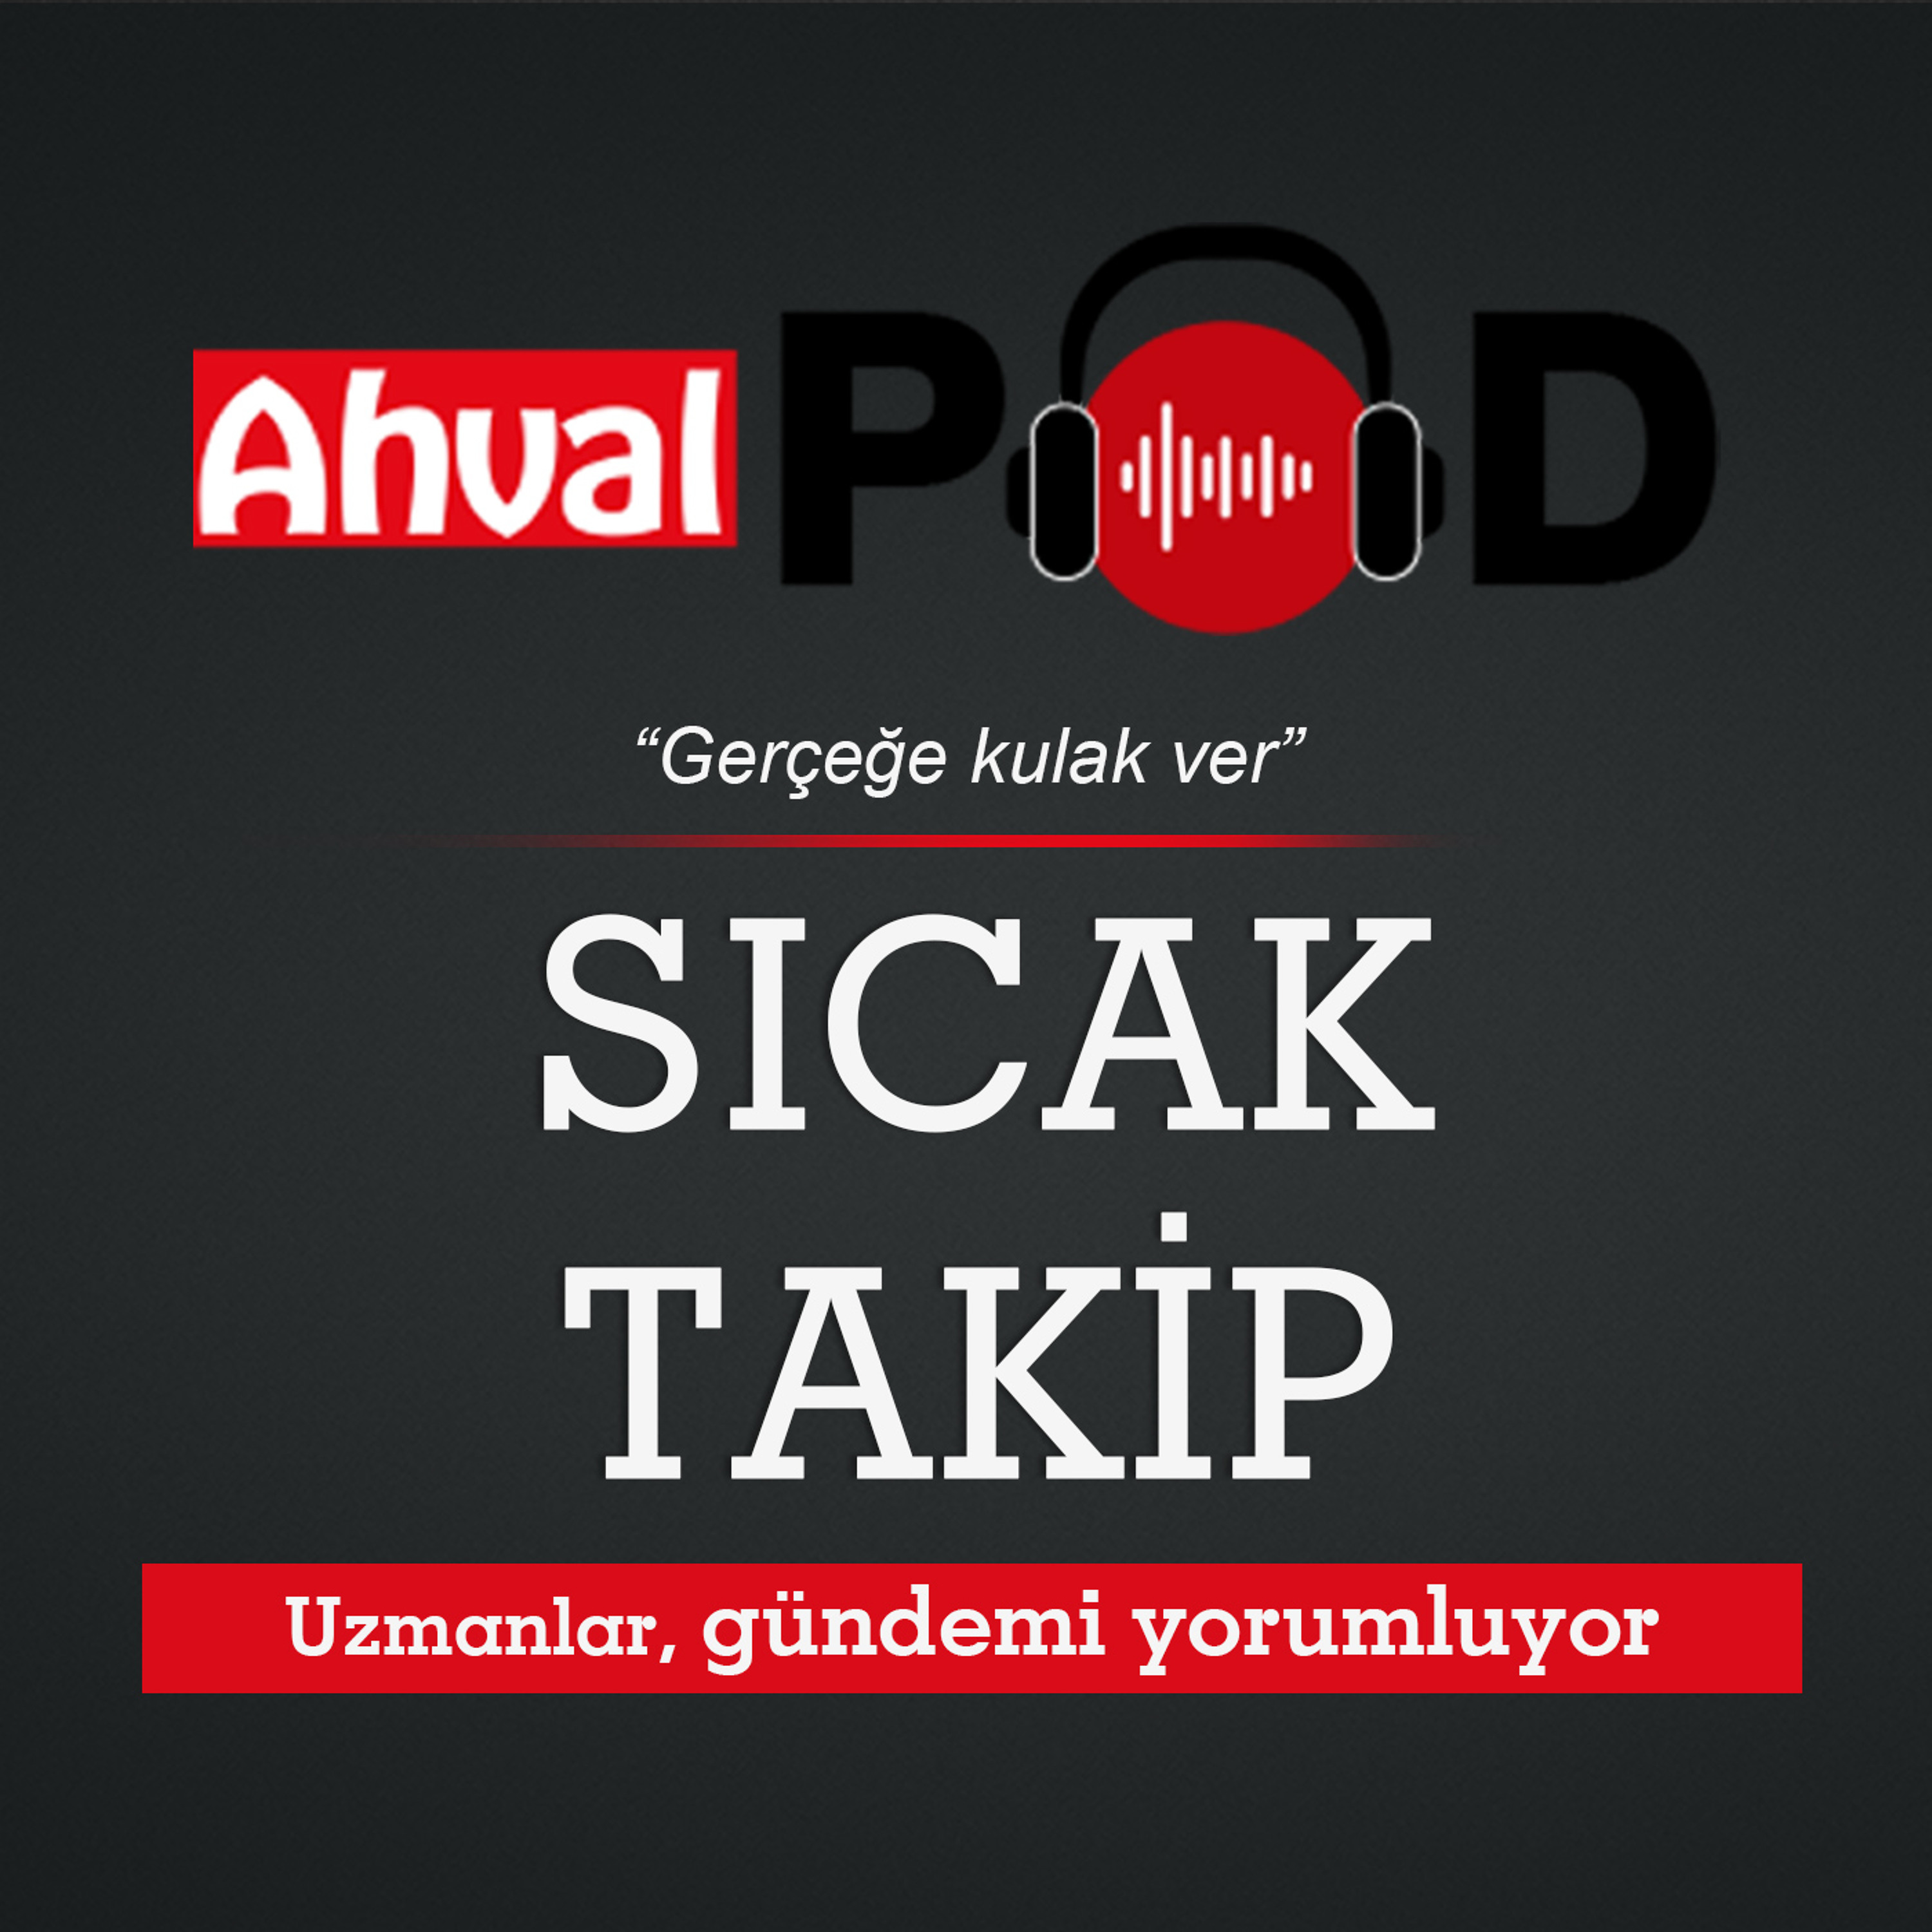 ‘Ankara ile KDP operasyonu birlikte planladı, KDP-PKK çatışması riski var’ - Fehim Işık